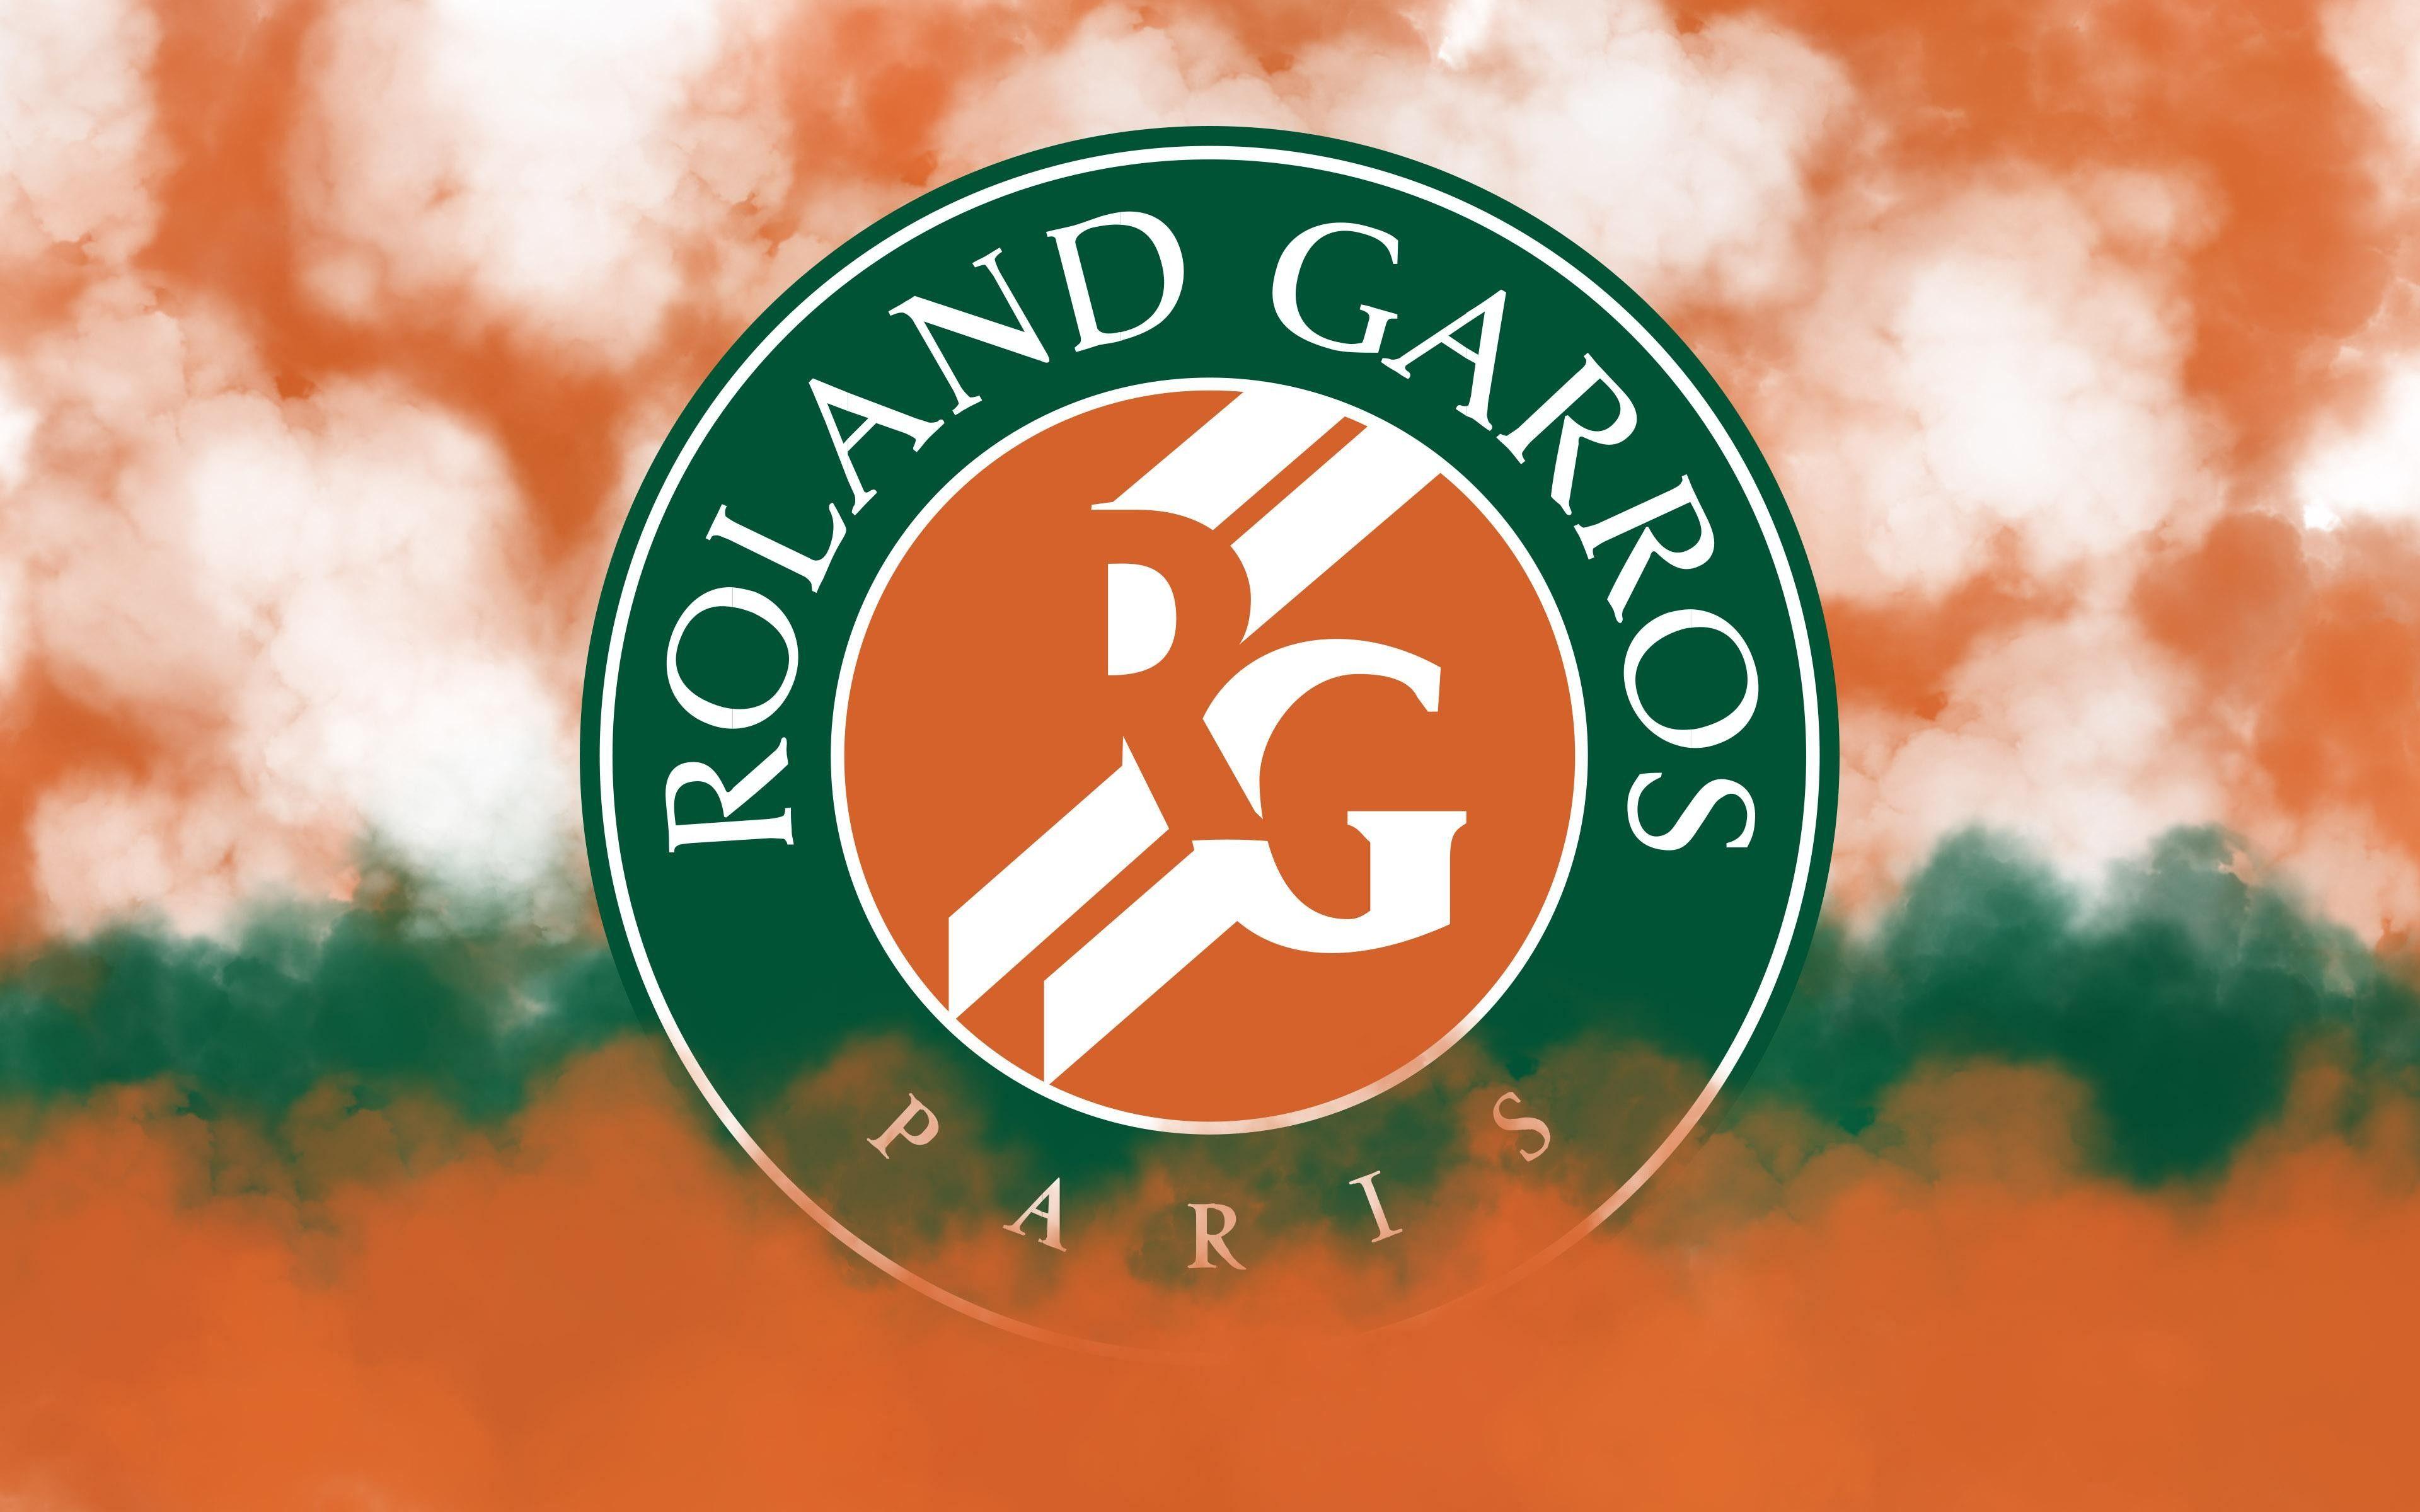 French Open 2015 Roland Garros Wallpaper HD Wallpaper